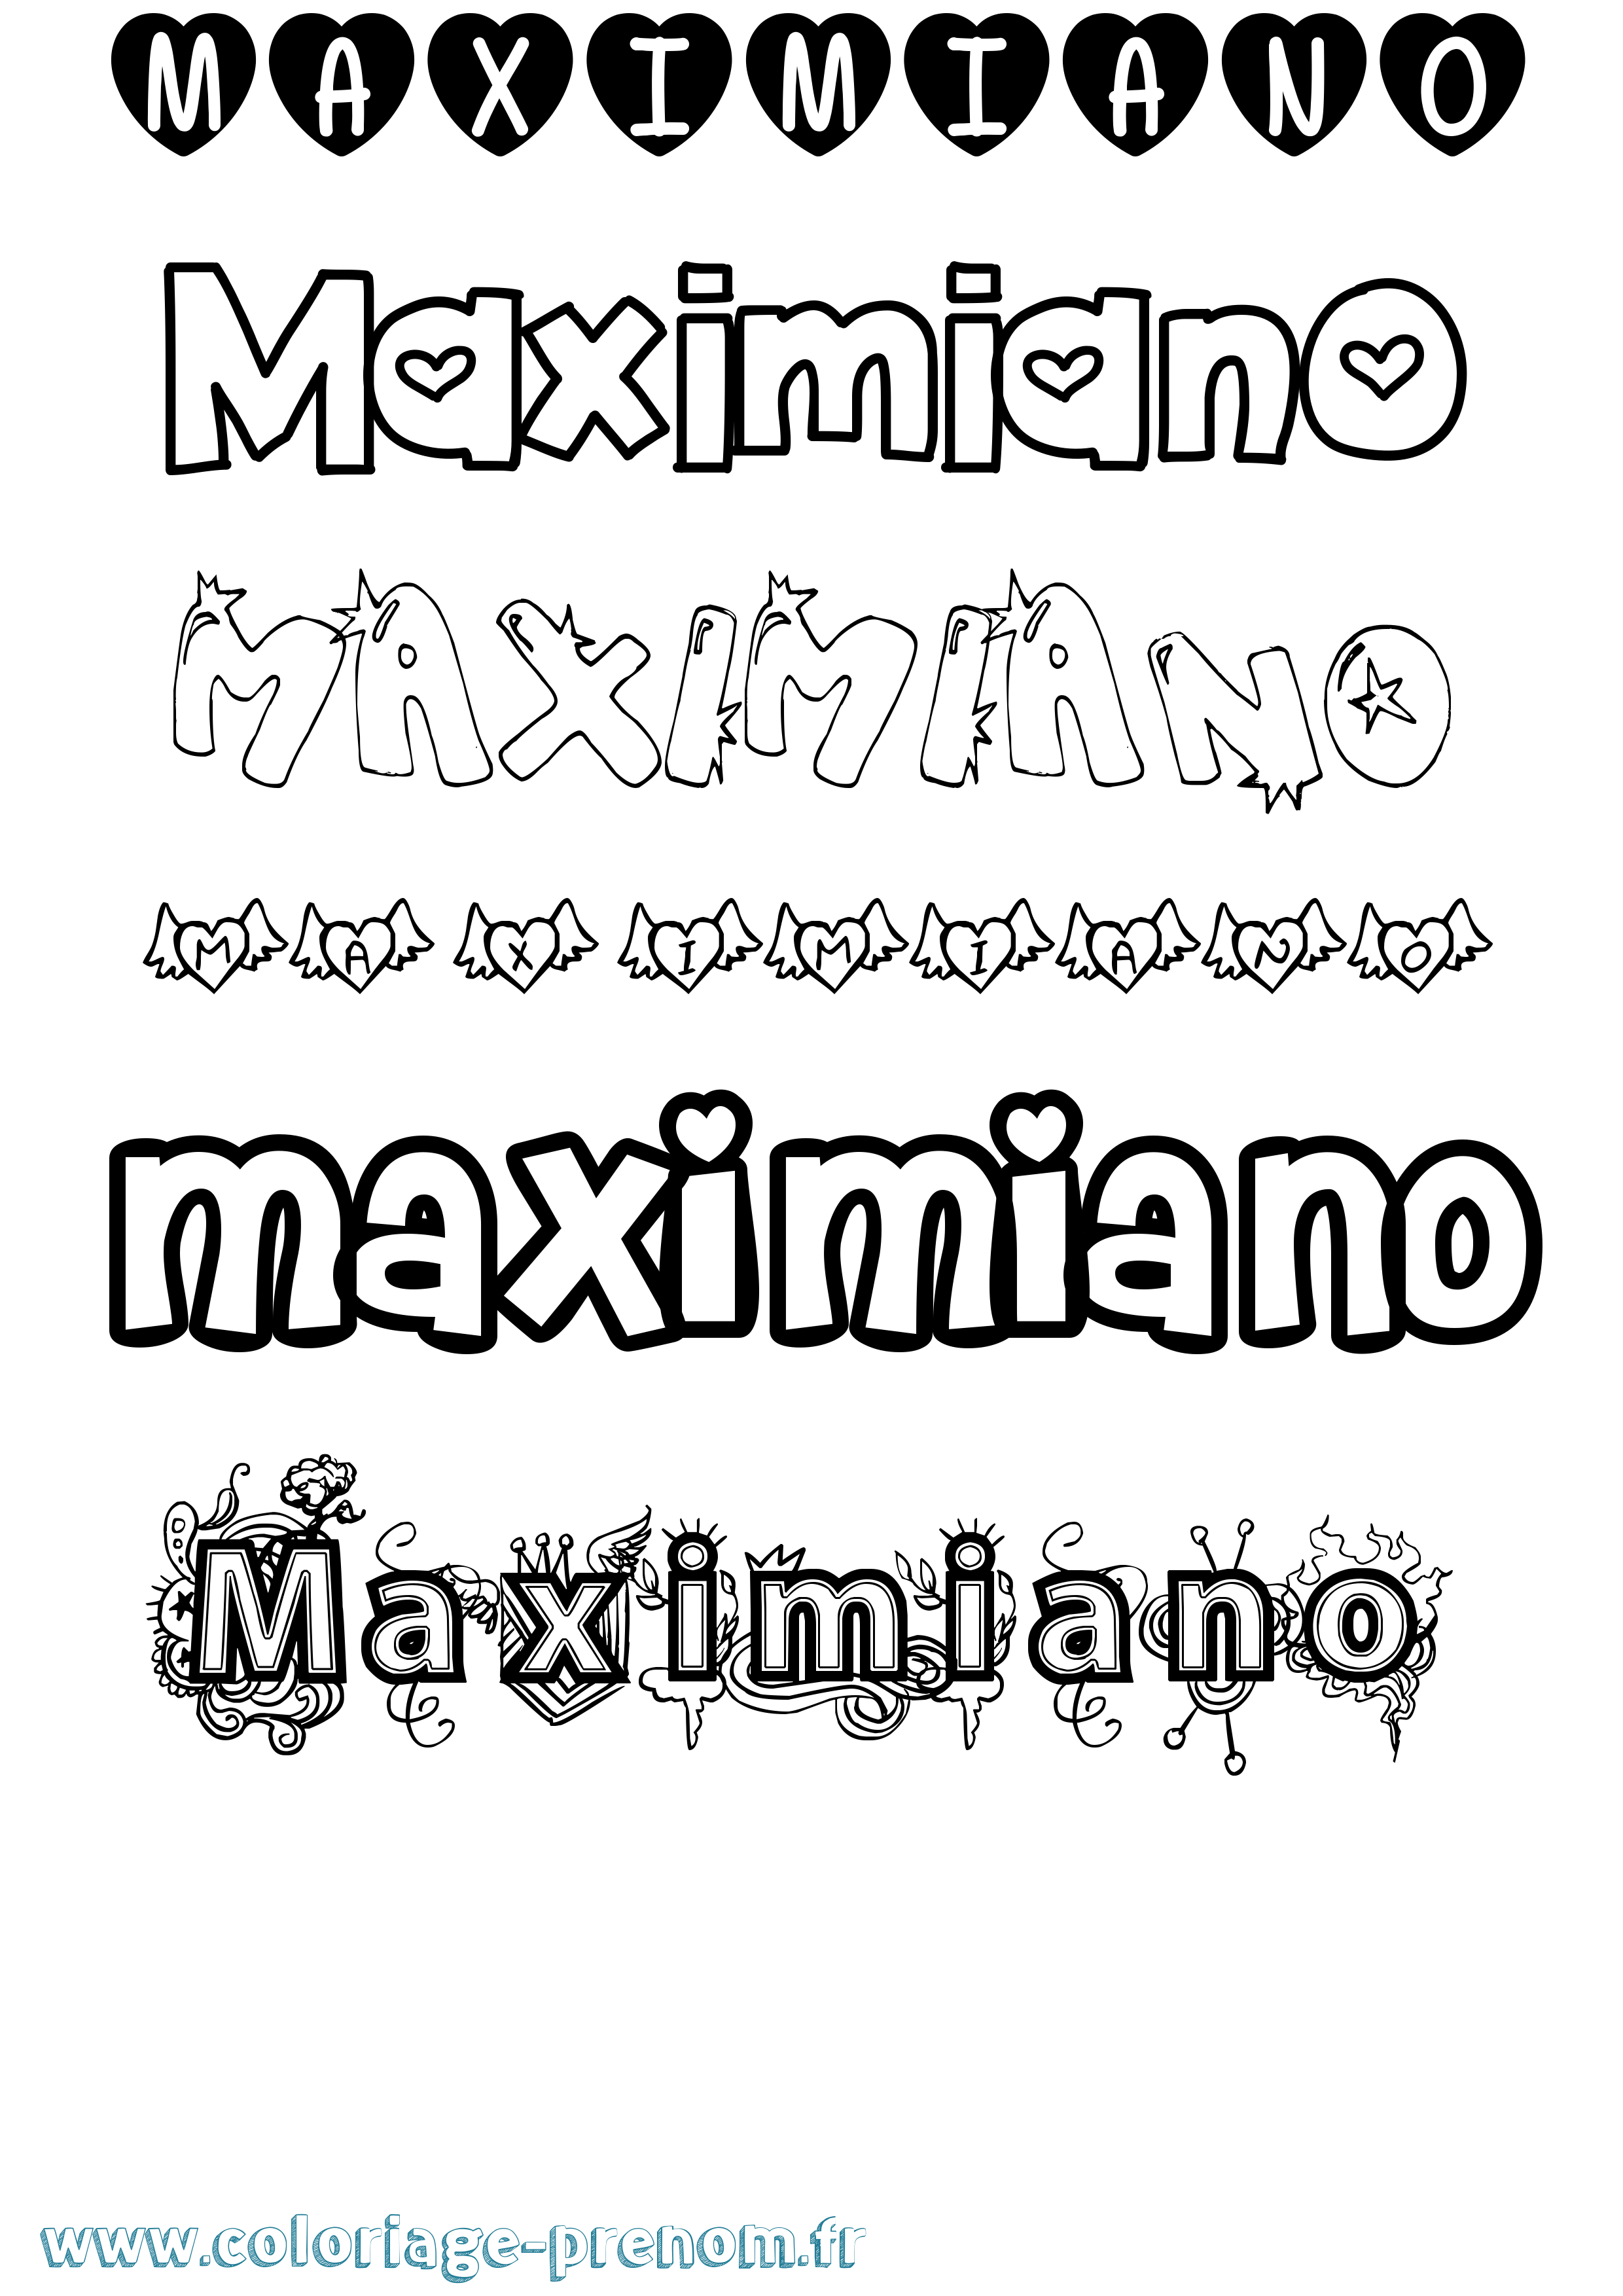 Coloriage prénom Maximiano Girly